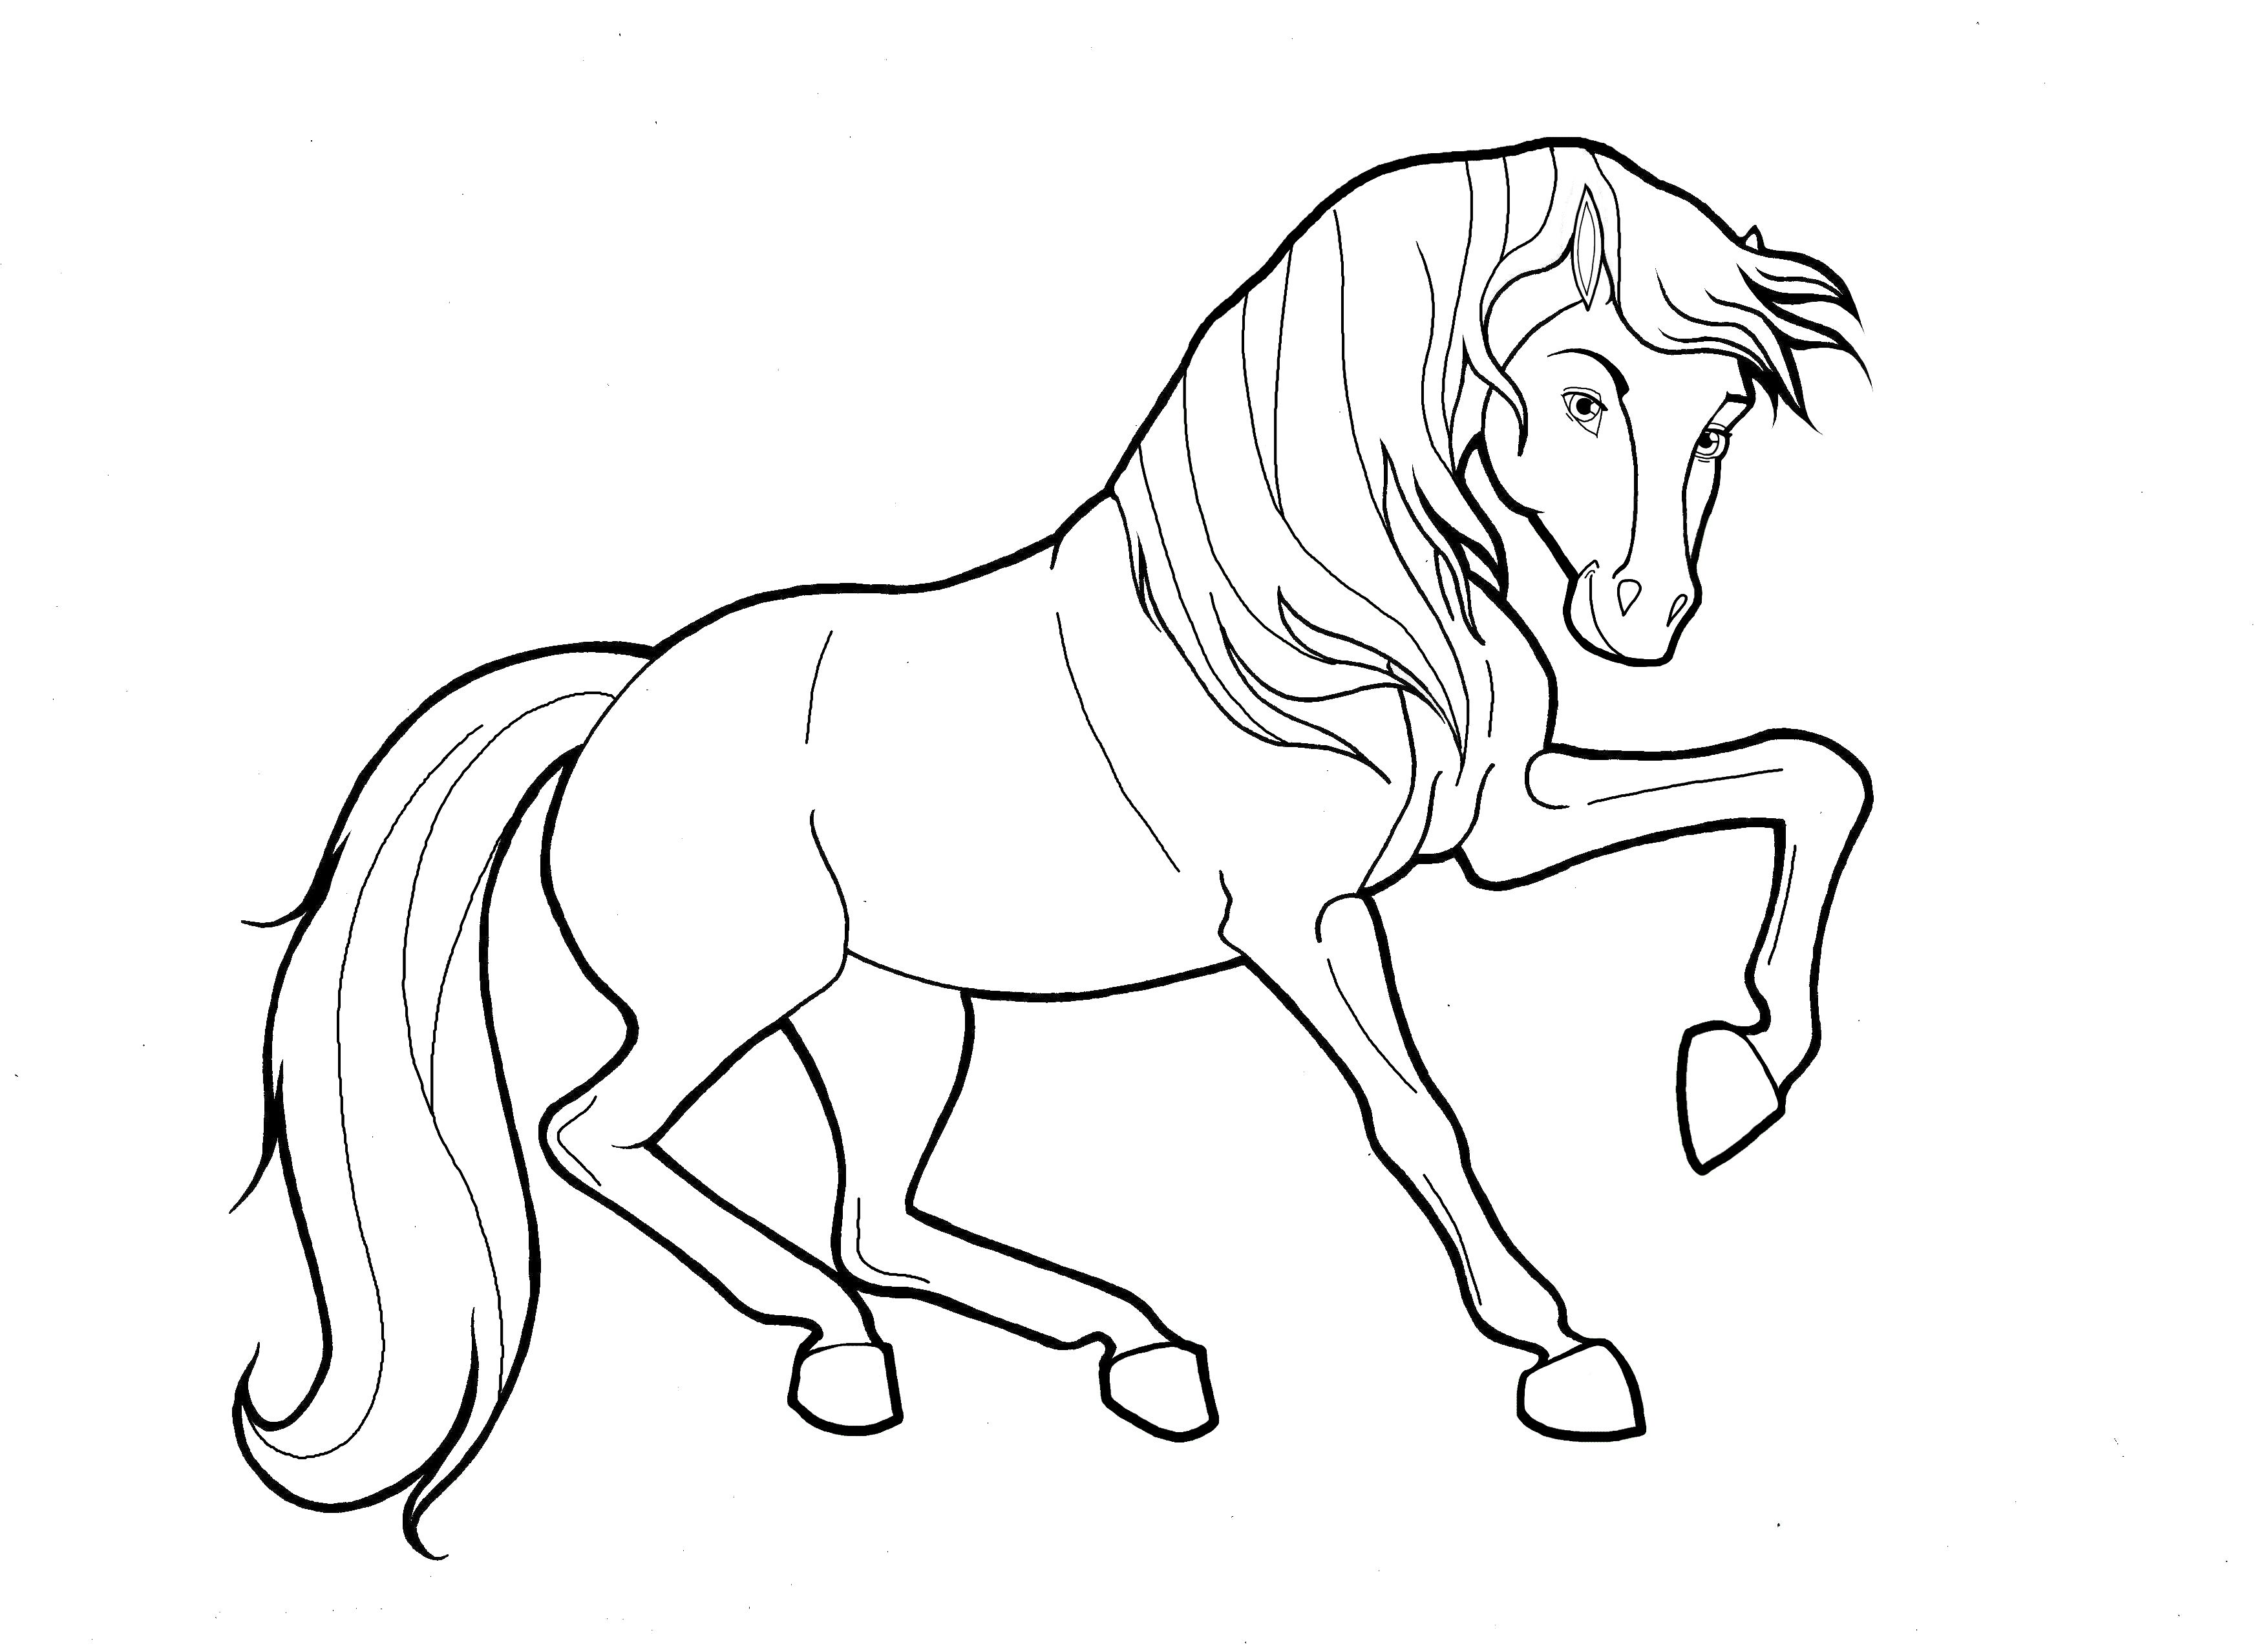 Coloring Pages : Coloring Pages Horses Horse And Foal ...